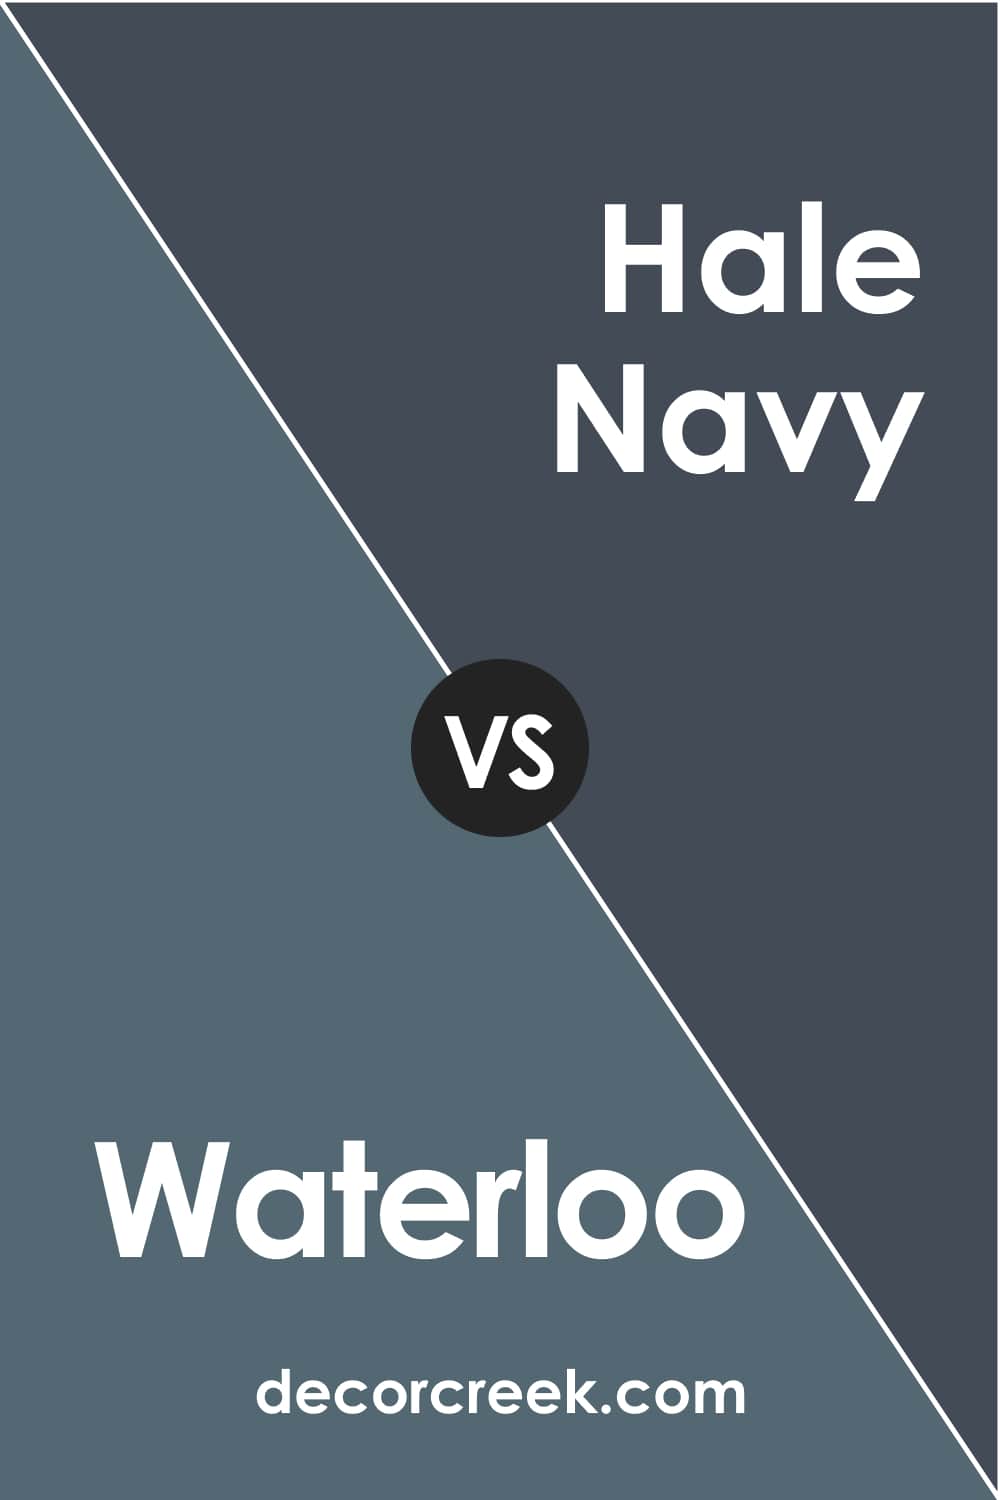 Waterloo vs Hale Navy